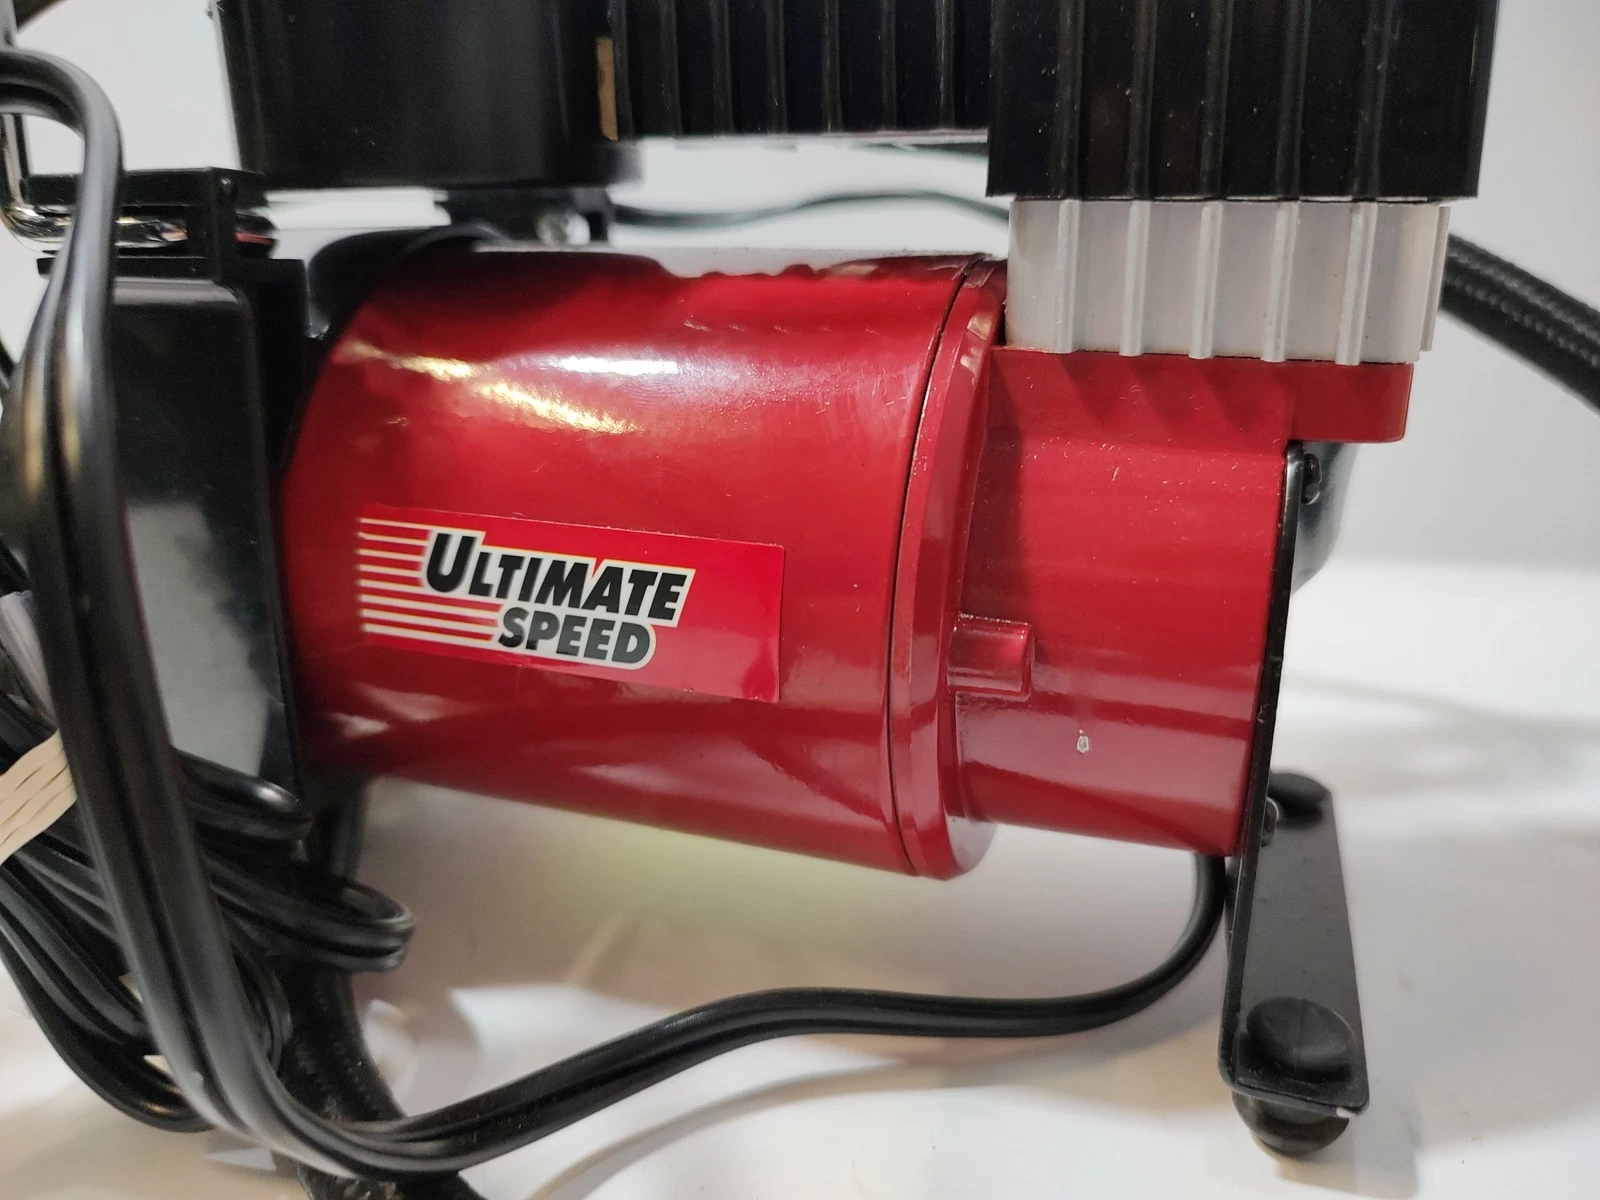 ULTIMATE SPEED® UMK 10 C2 Minikompressor - B-Ware sehr gut, 13,99 €